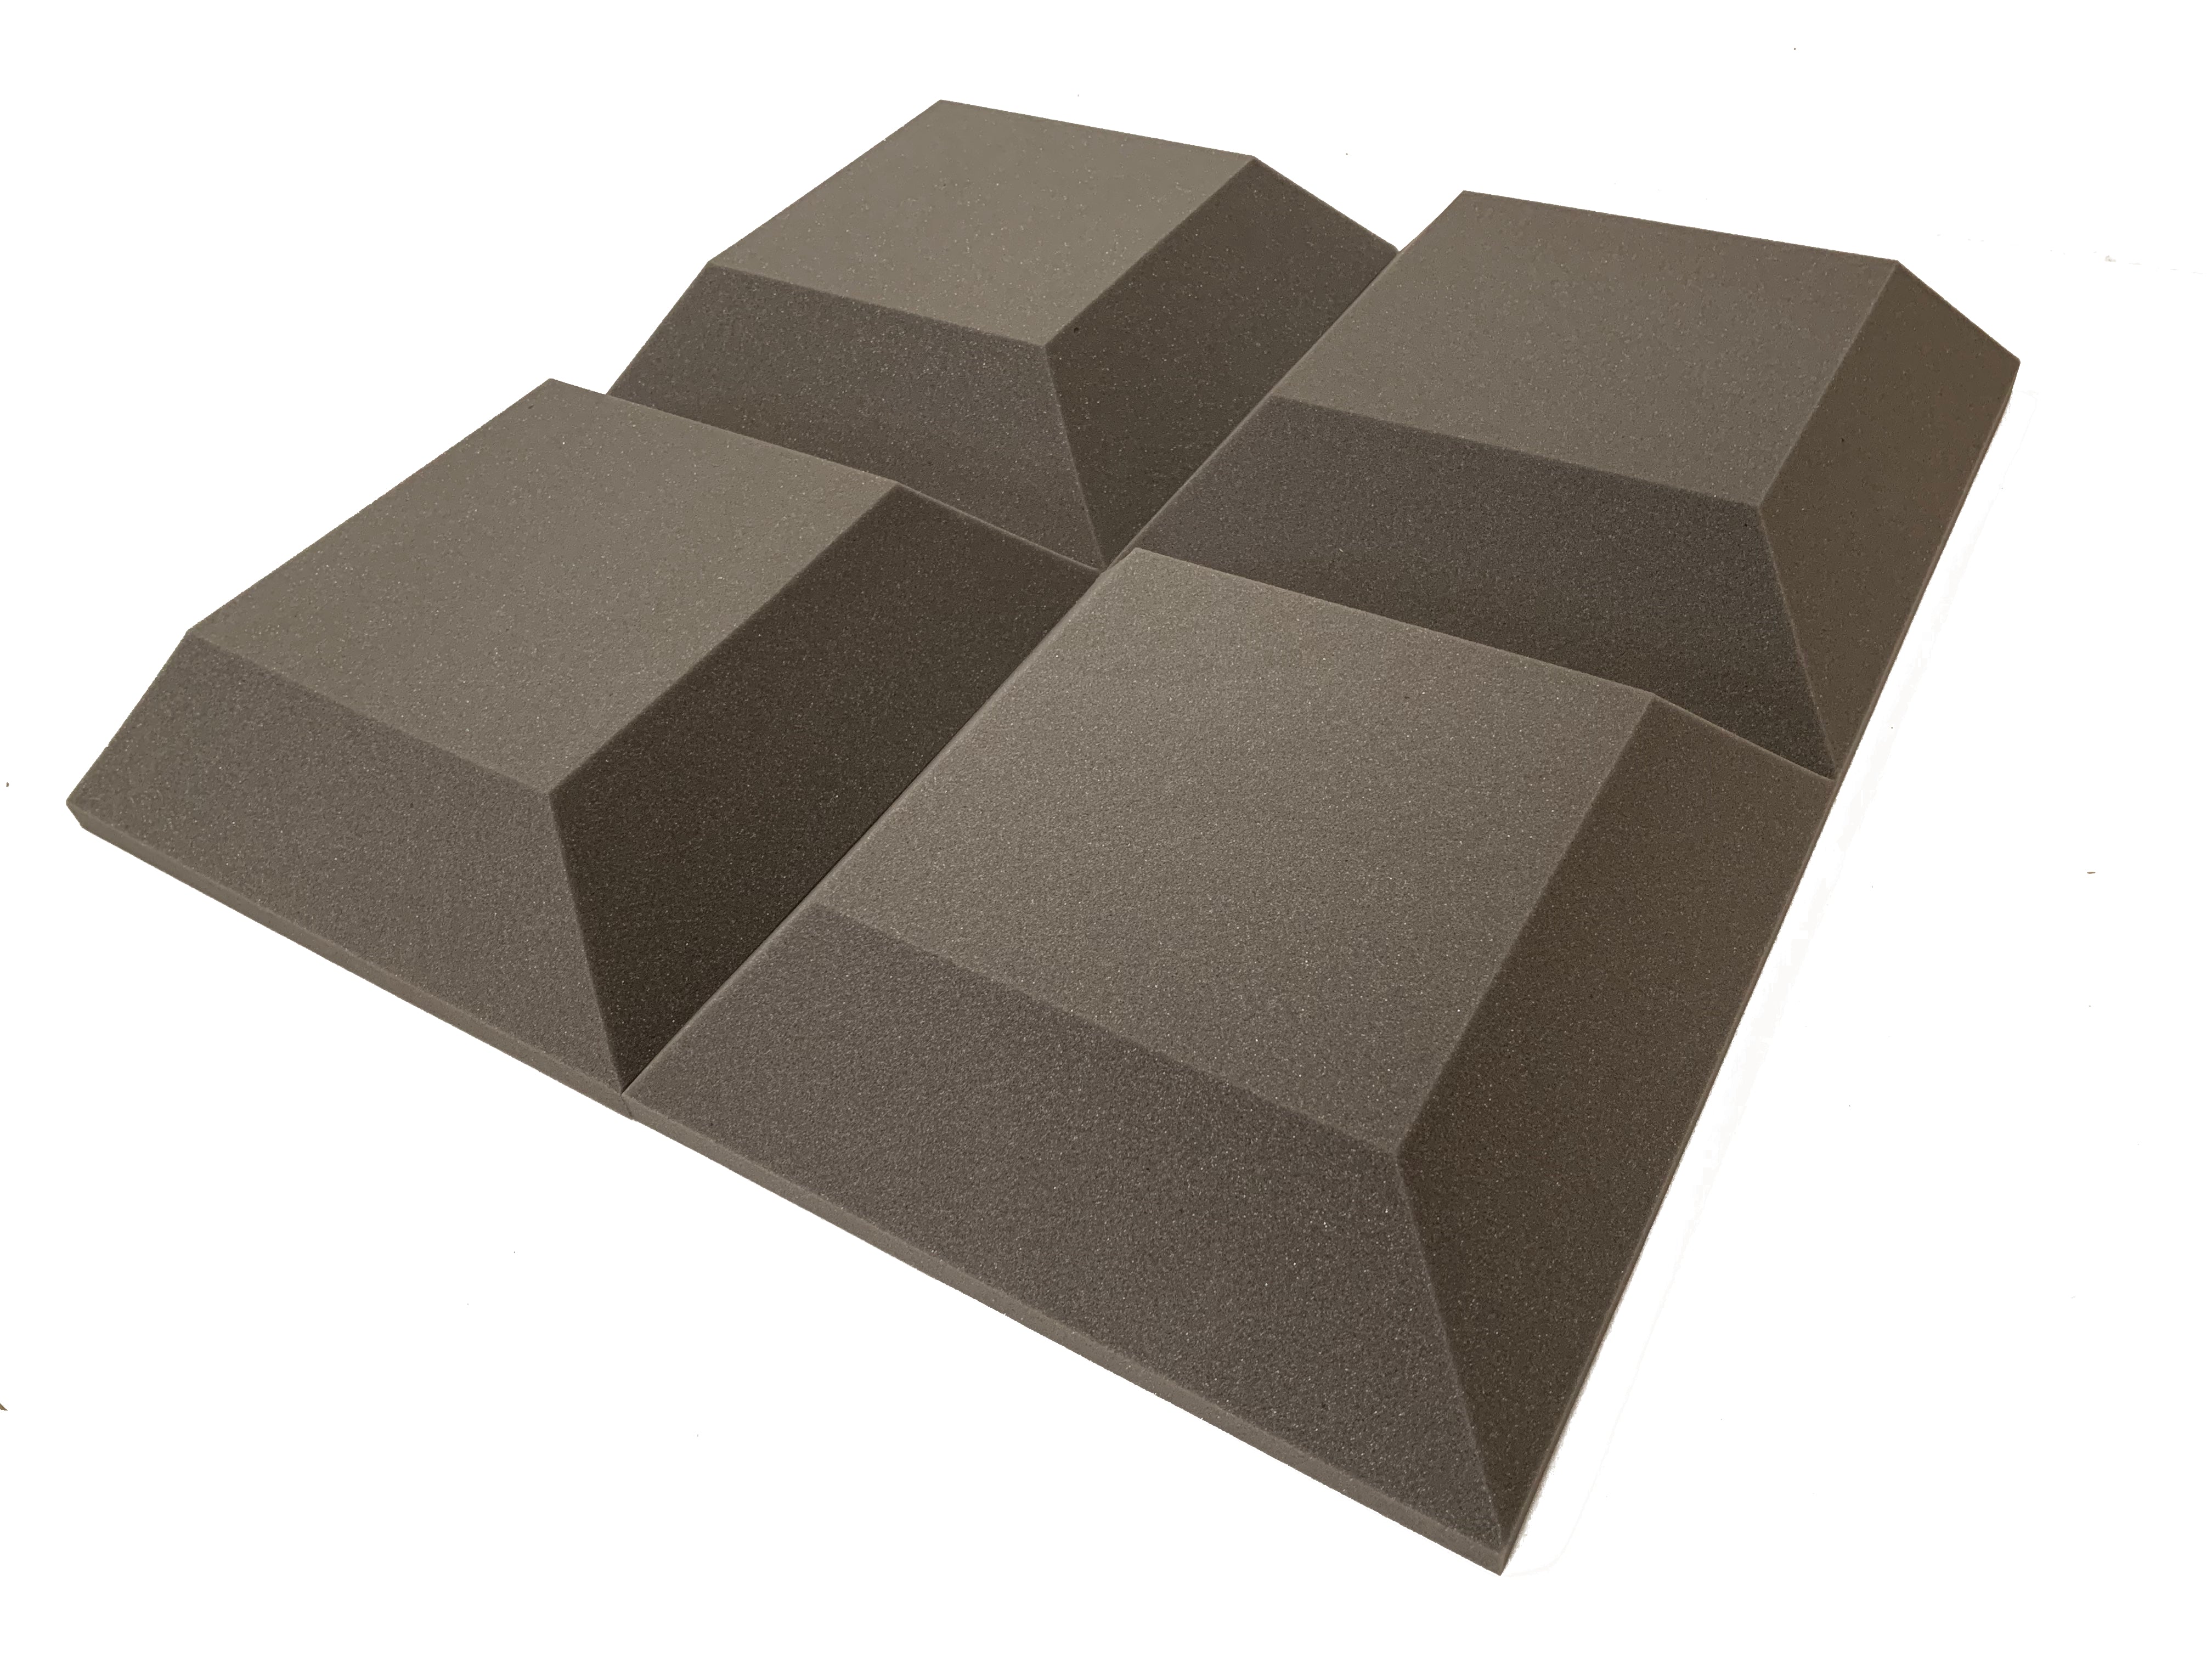 Tegular 2" Acoustic Studio Foam Tile Pack - 24 dalles, couverture de 3,48 m²-16